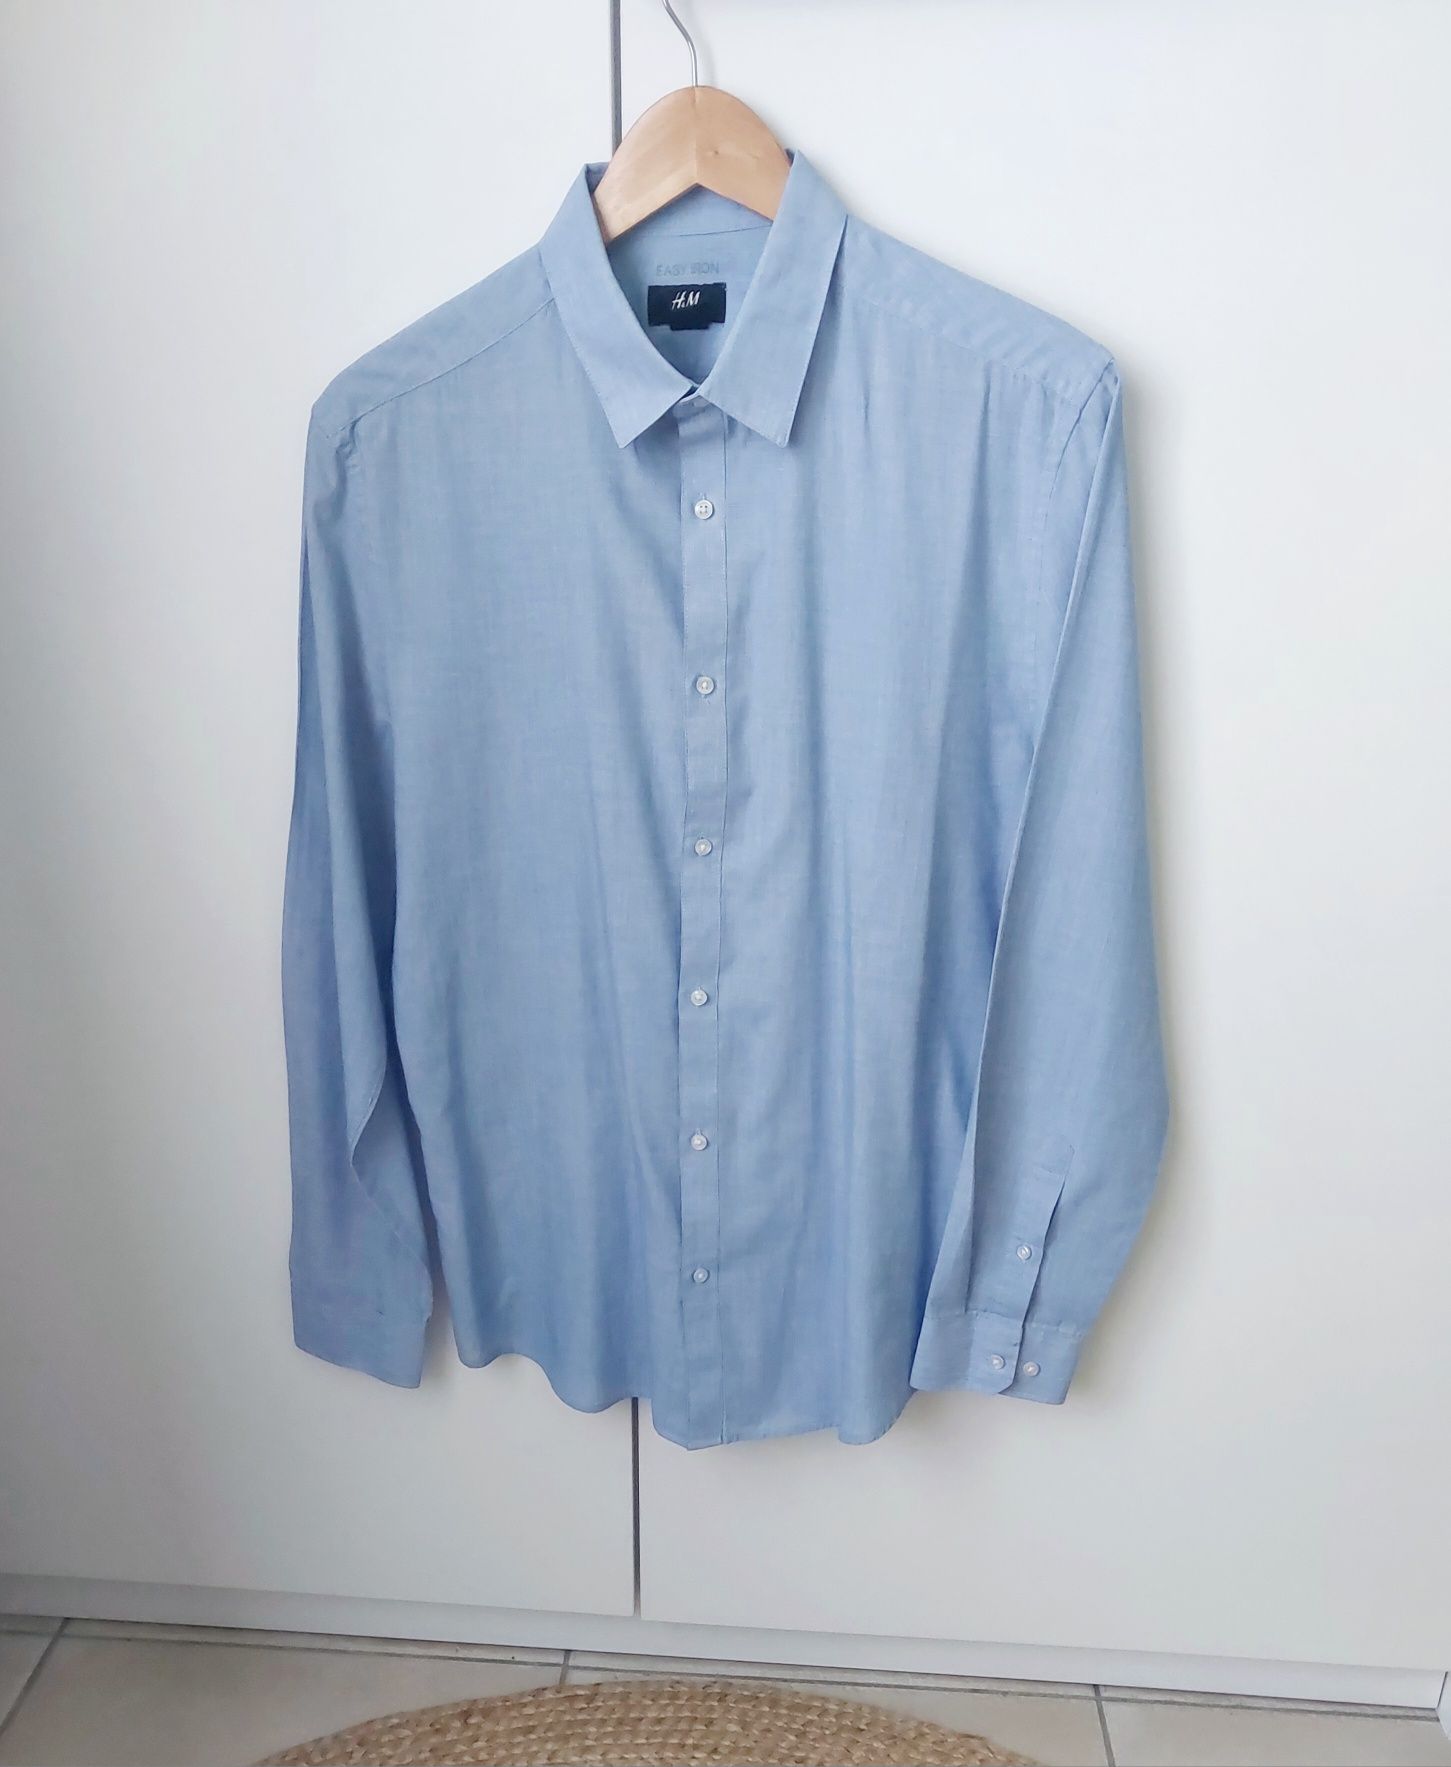 Koszula męska H&M błękitna koszula Slim fit easy Iron smart casual